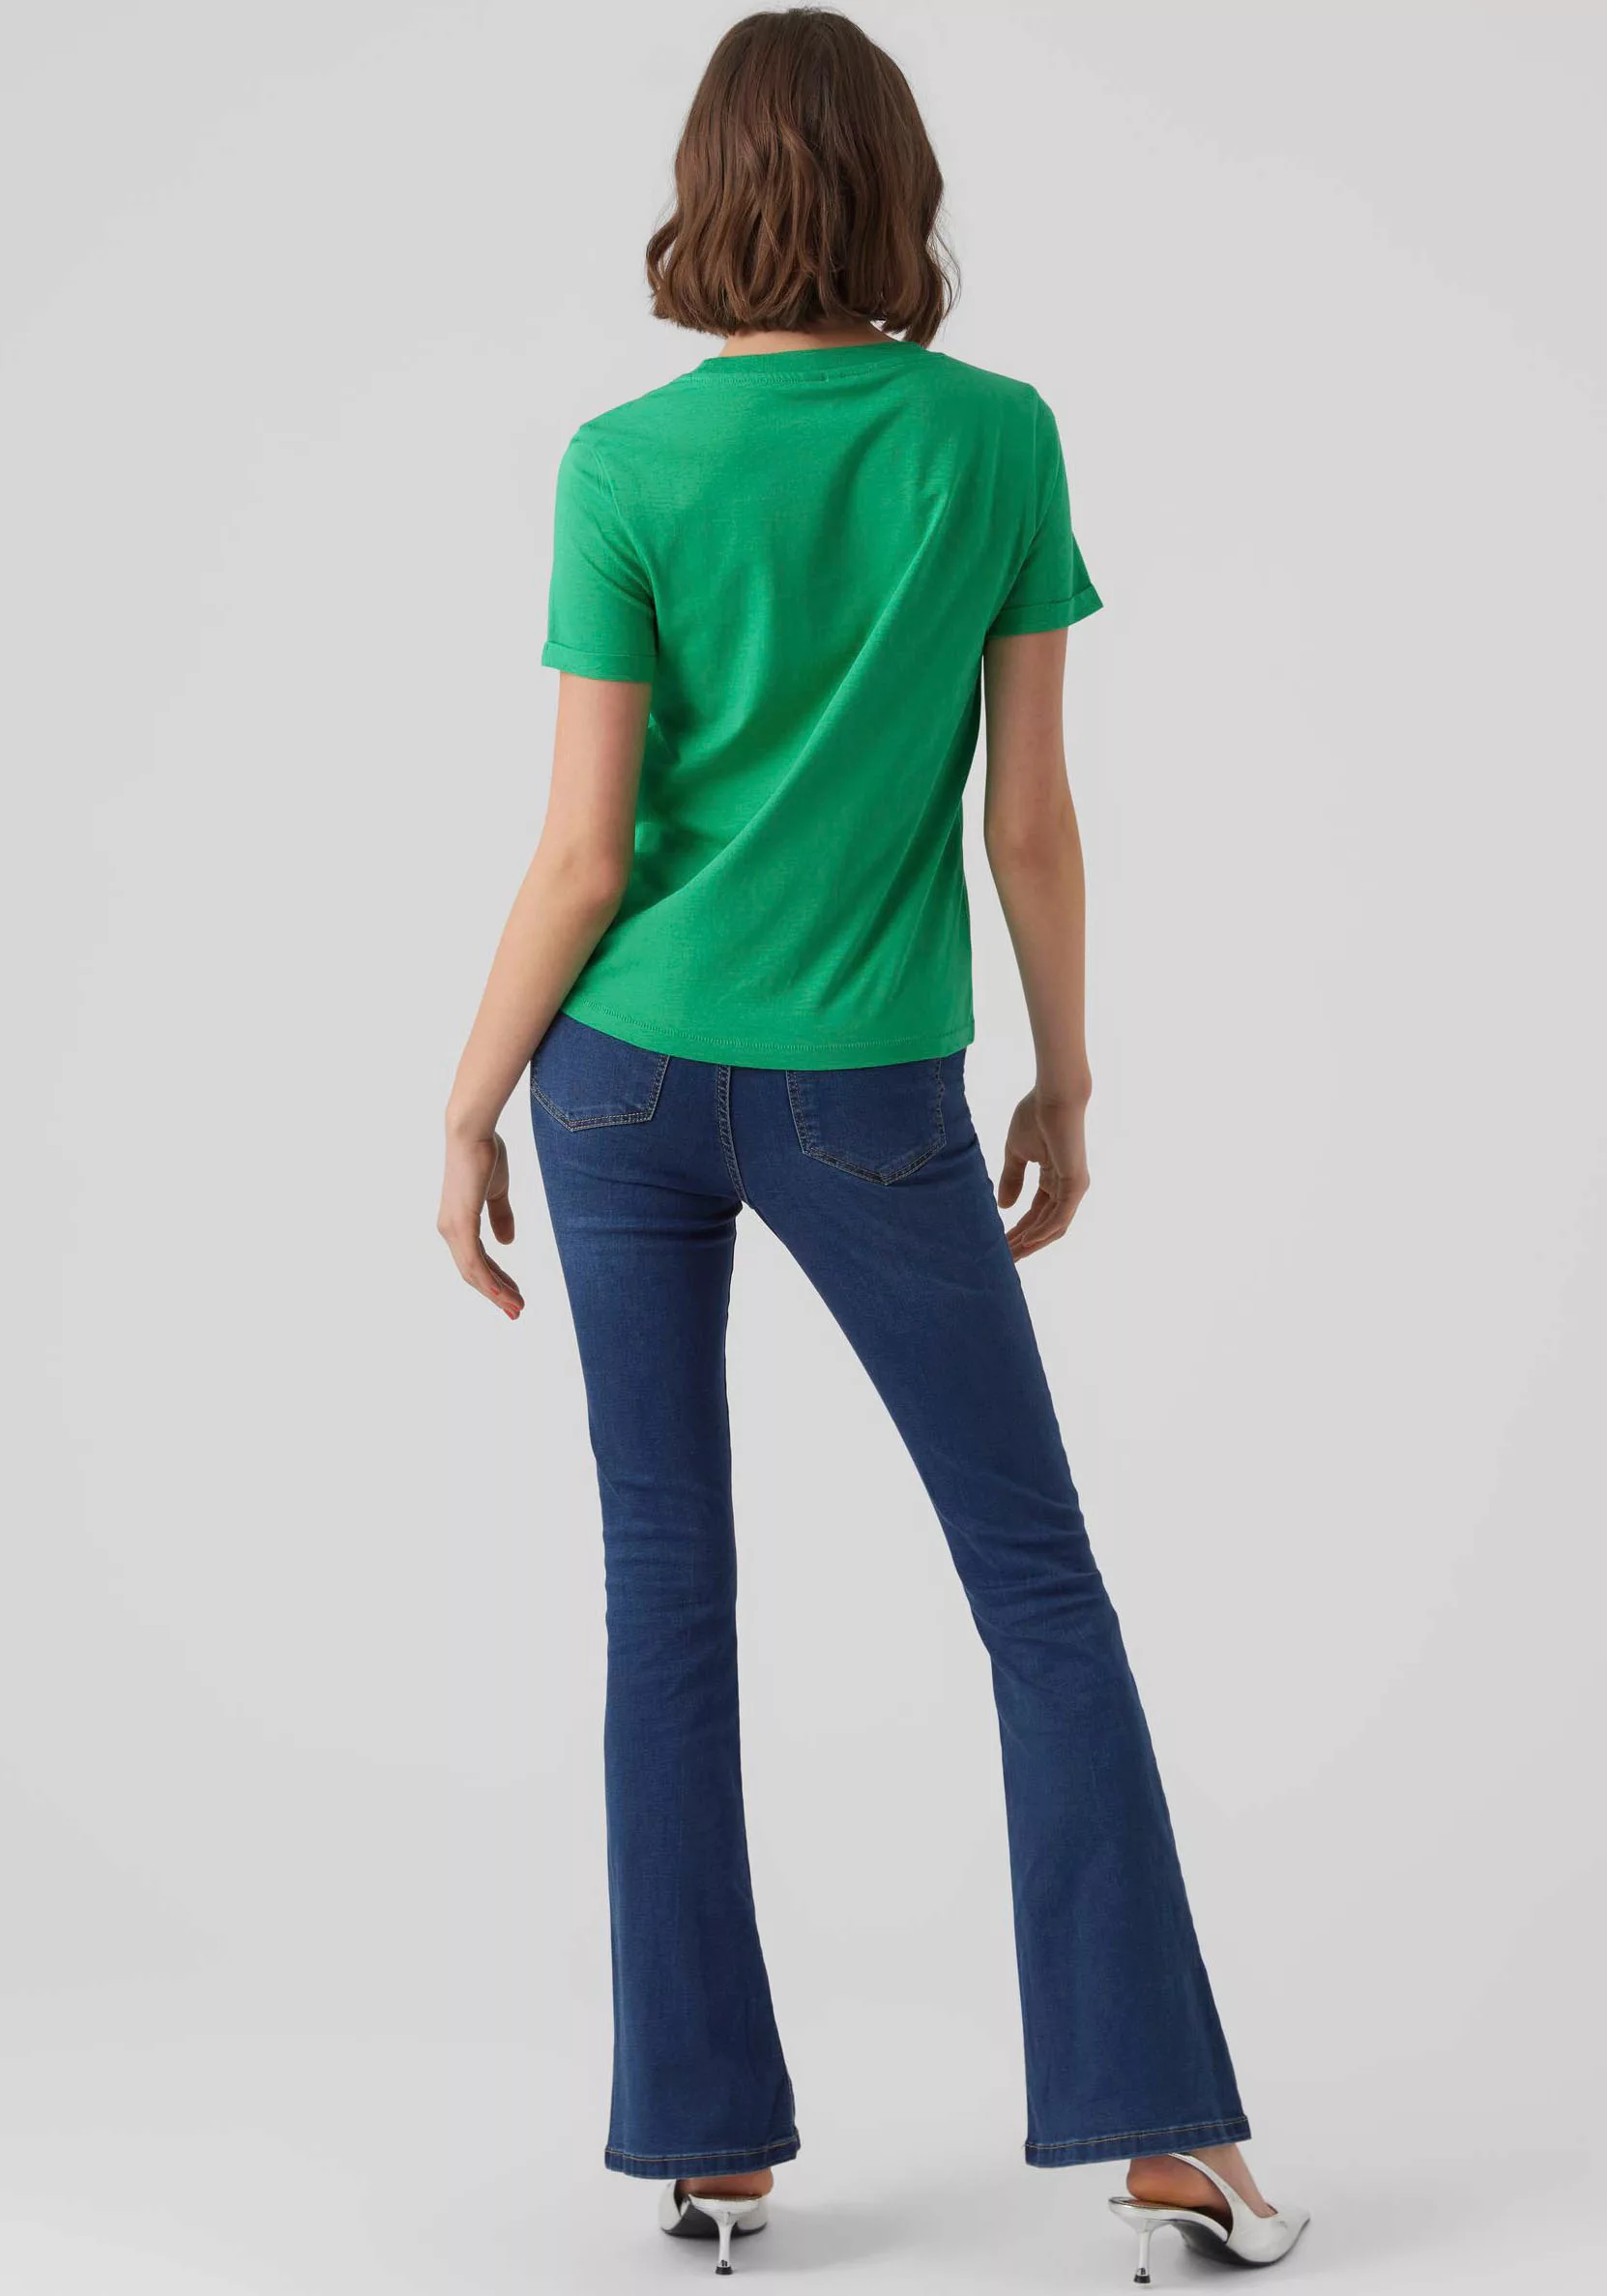 Vero Moda Damen Rundhals T-Shirt VMPAULA günstig online kaufen